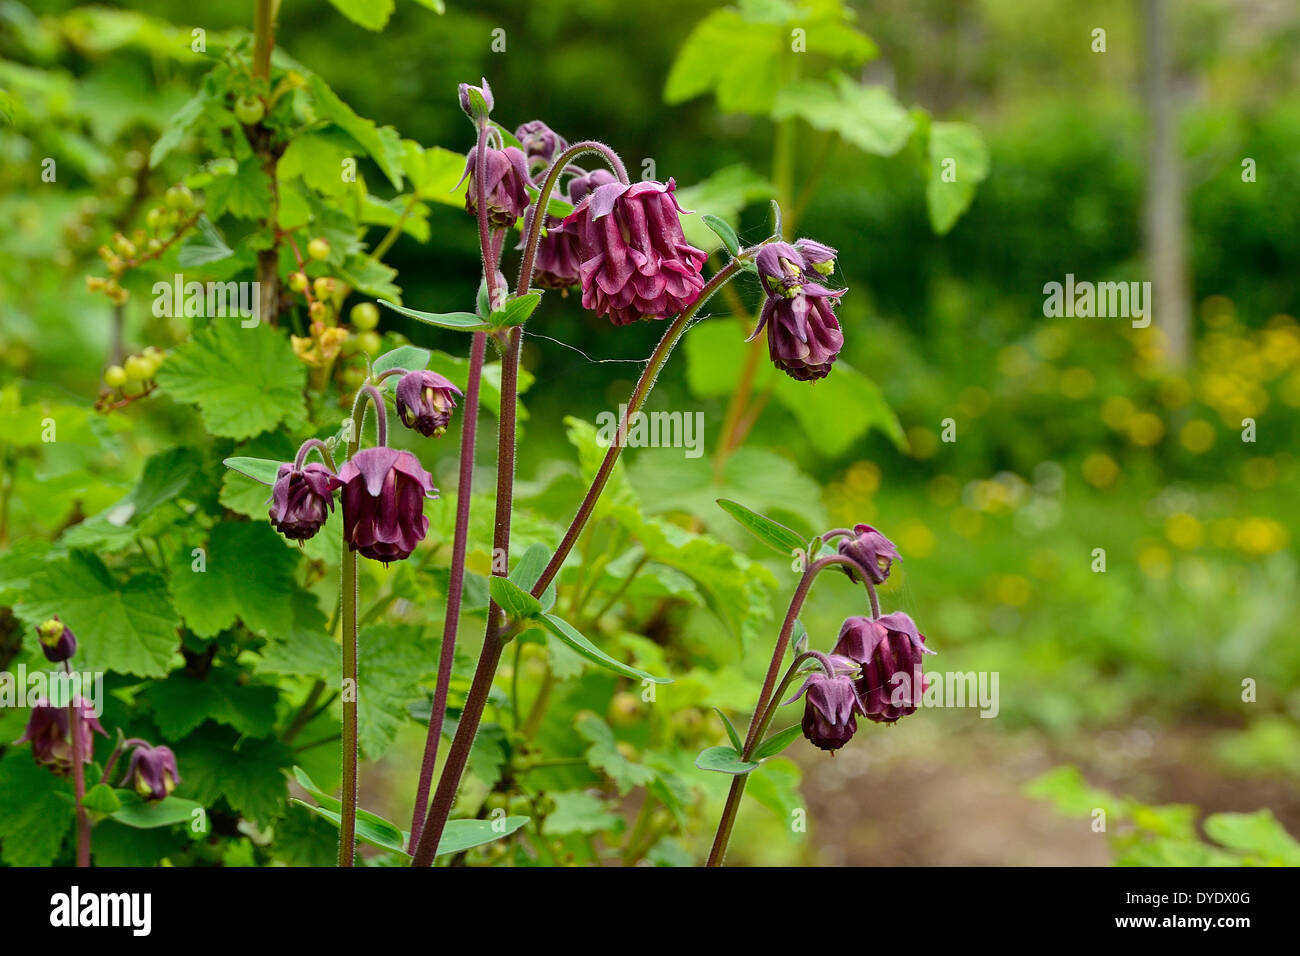 Columbine (Aquilegia) in bloom in a garden. Stock Photo